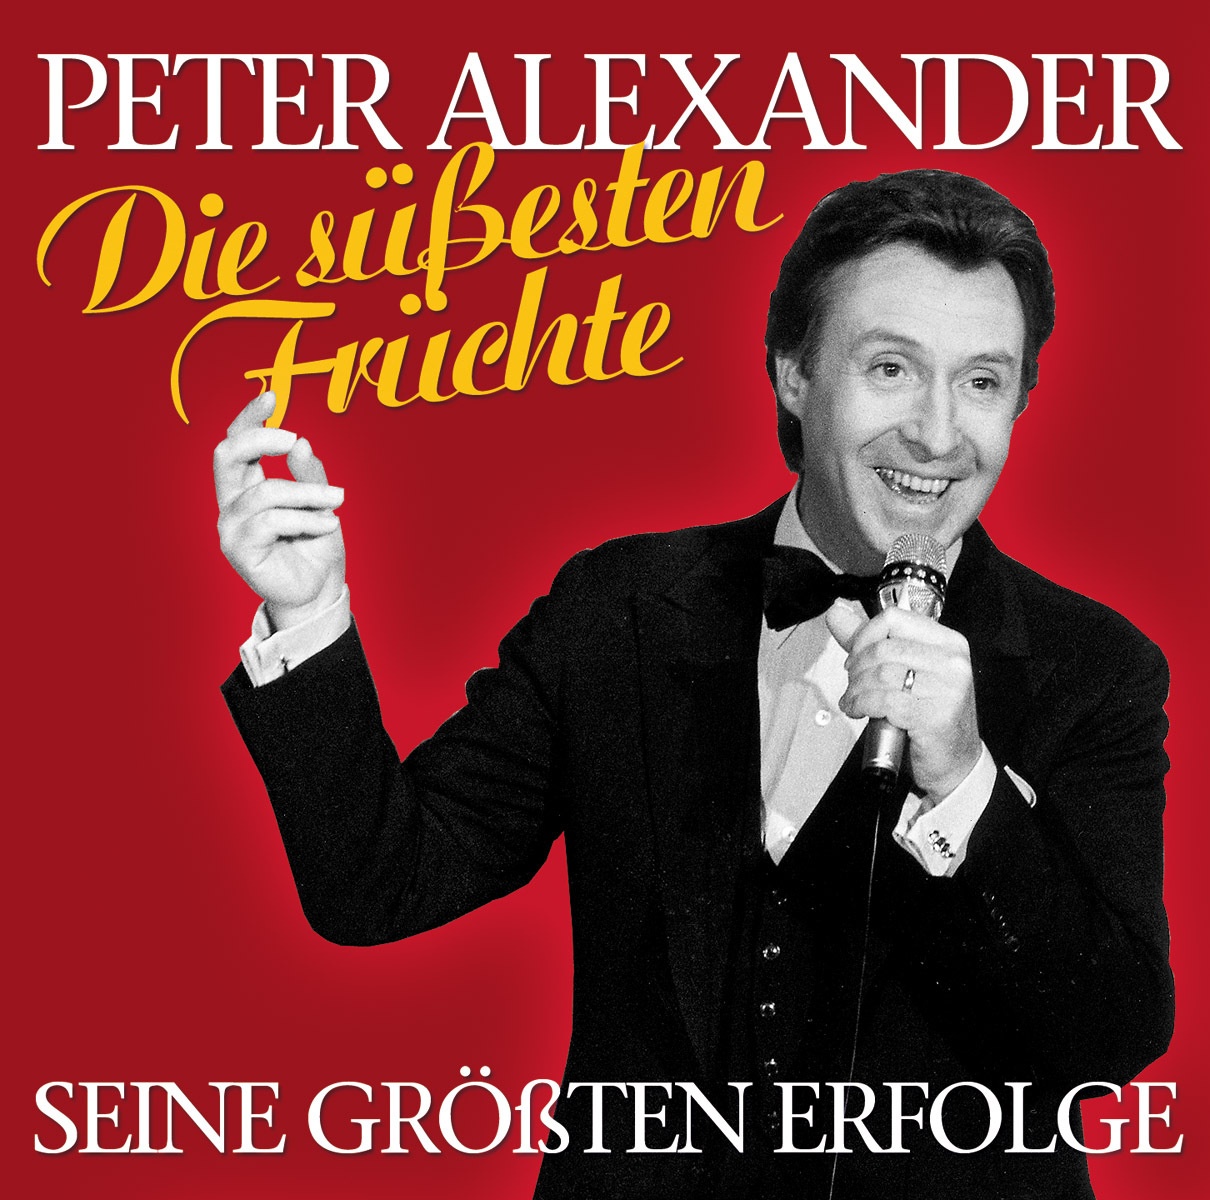 Seine Größten Erfolge-Die Süßesten Früchte - Peter Alexander. (CD)